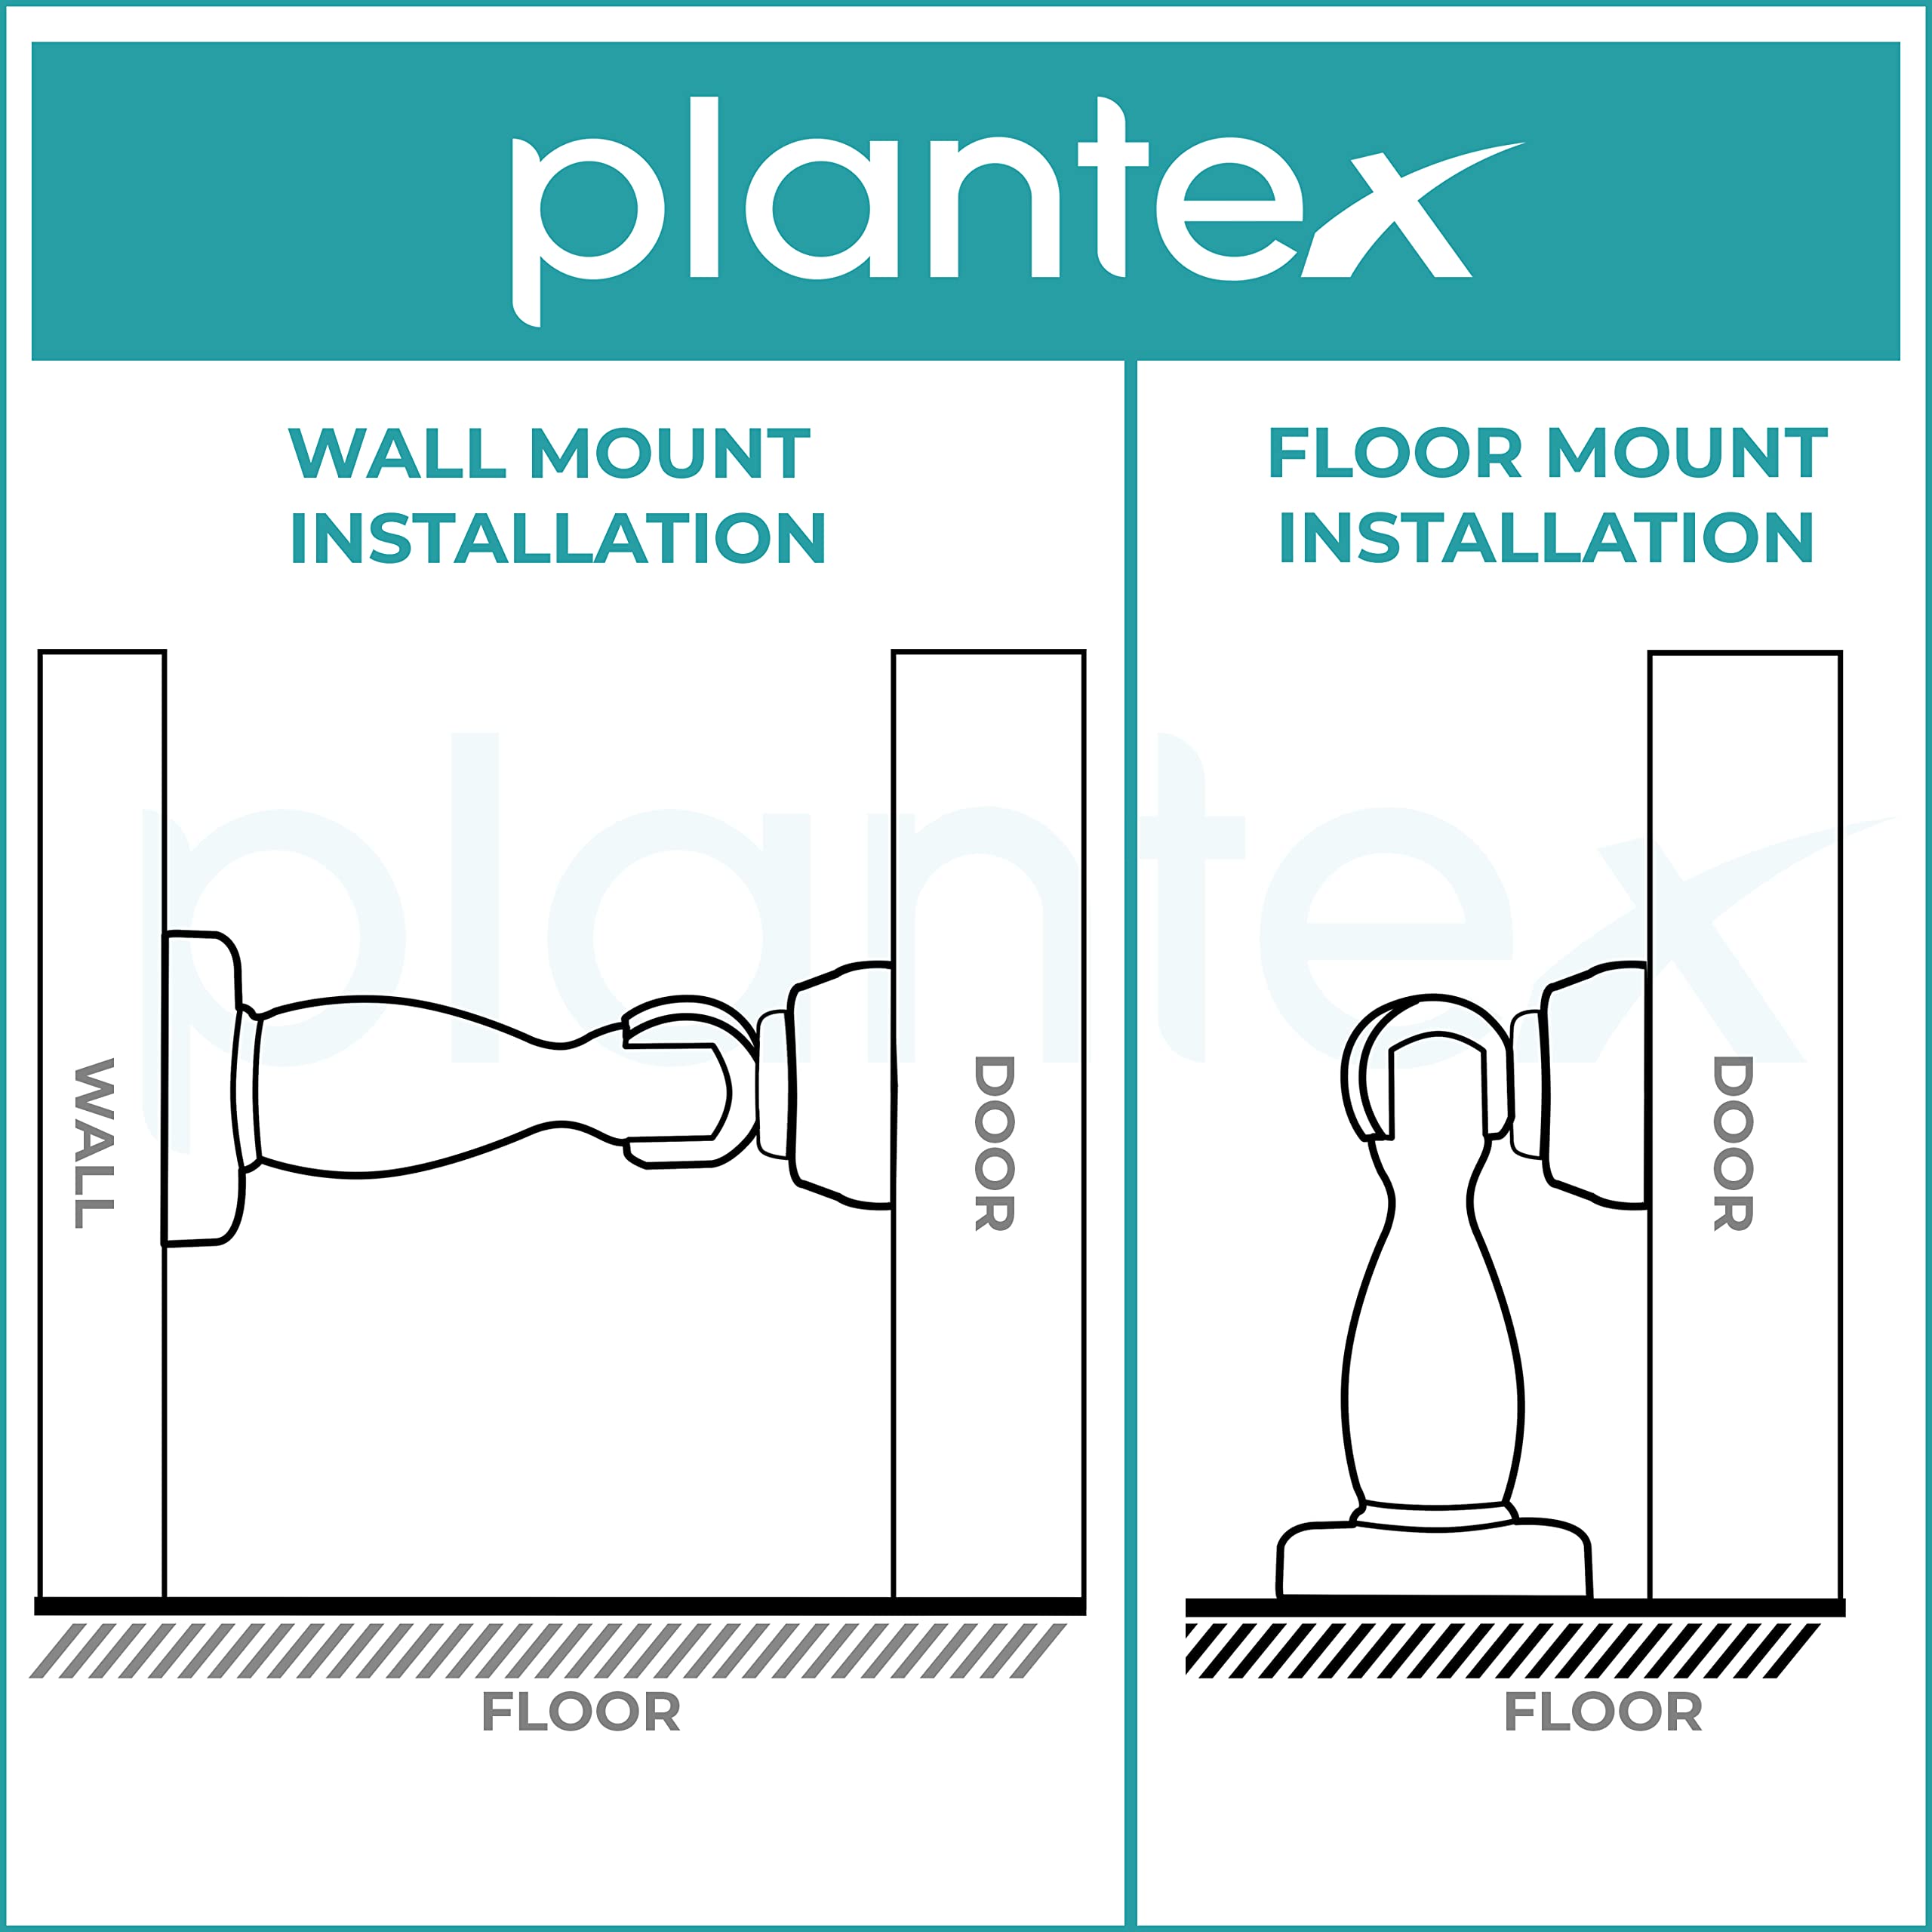 Plantex Magnetic Door Stopper for Home/360 Degree Magnet Door Catcher/Door Holder for Main Door/Bedroom/Office and Hotel Door - Pack of 4 (4 inch, Black)